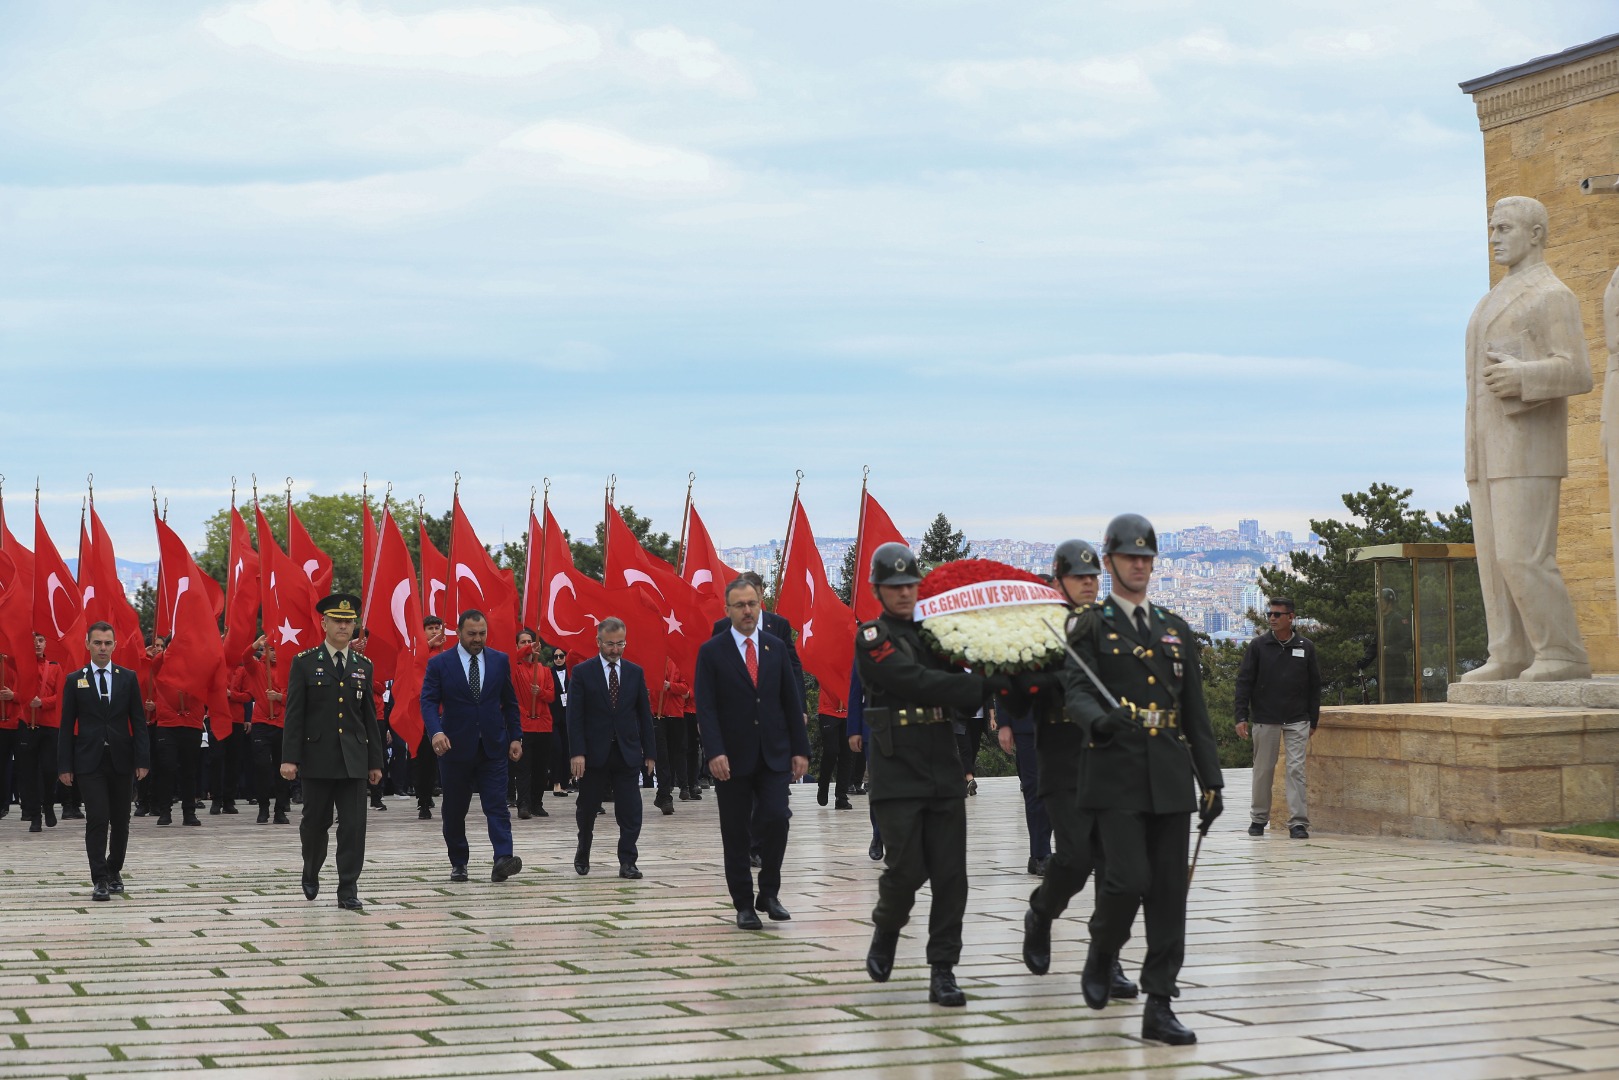 Milli sporcularımız Atatürk'ün huzuruna çıktı 23